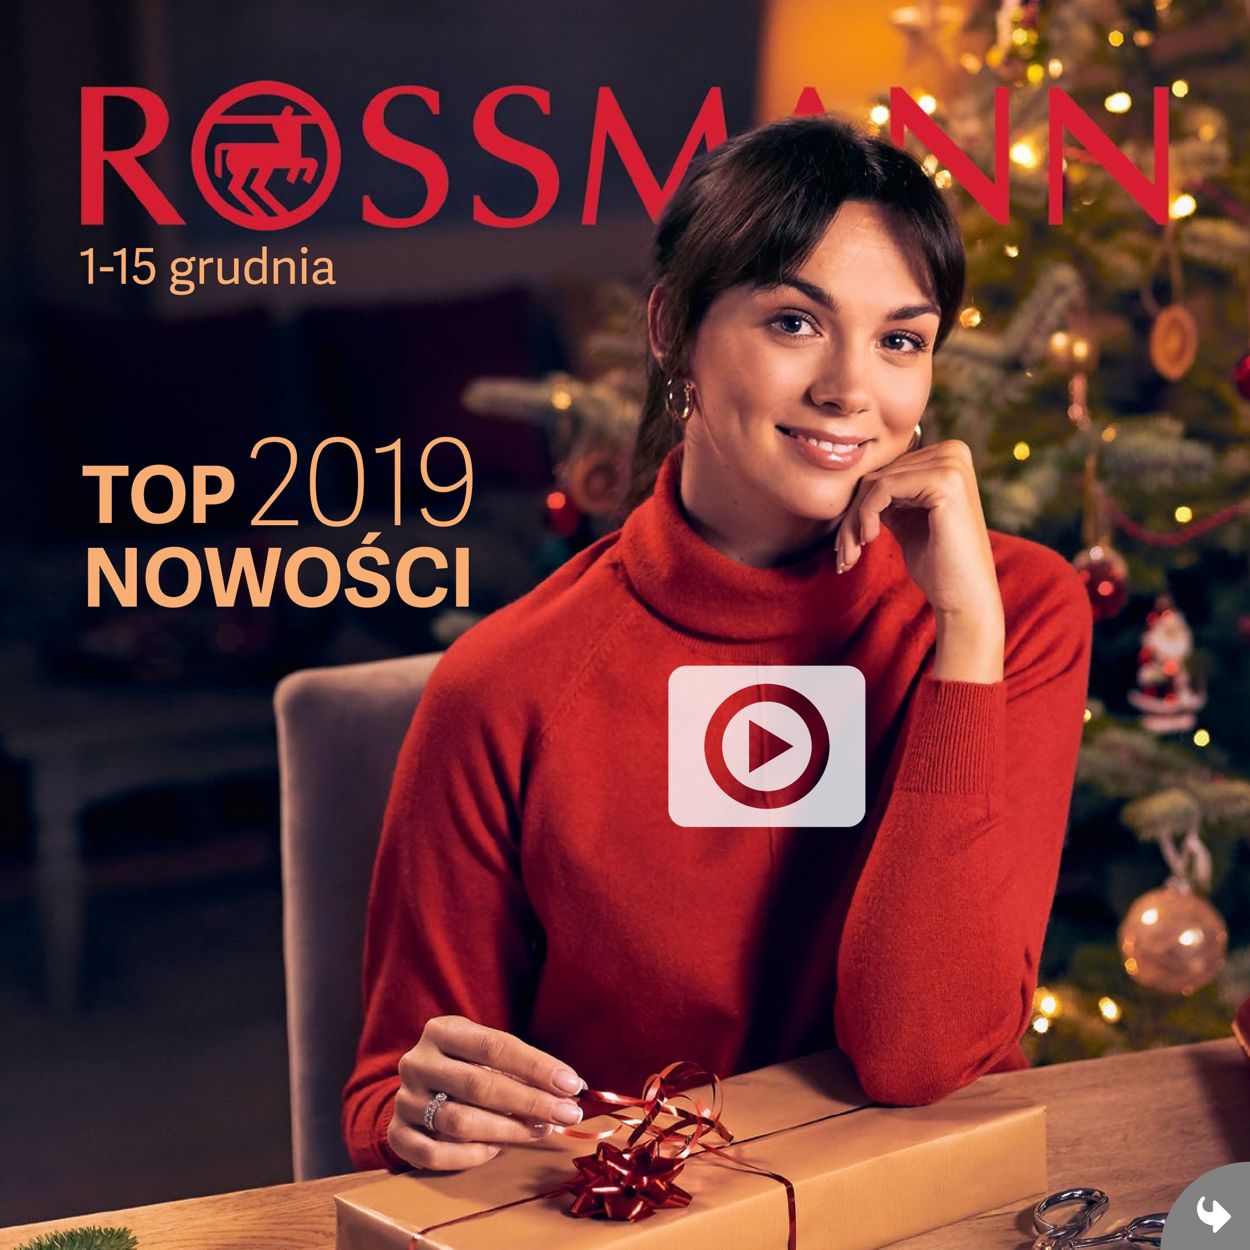 Rossmann Gazetka od 01.12.2019